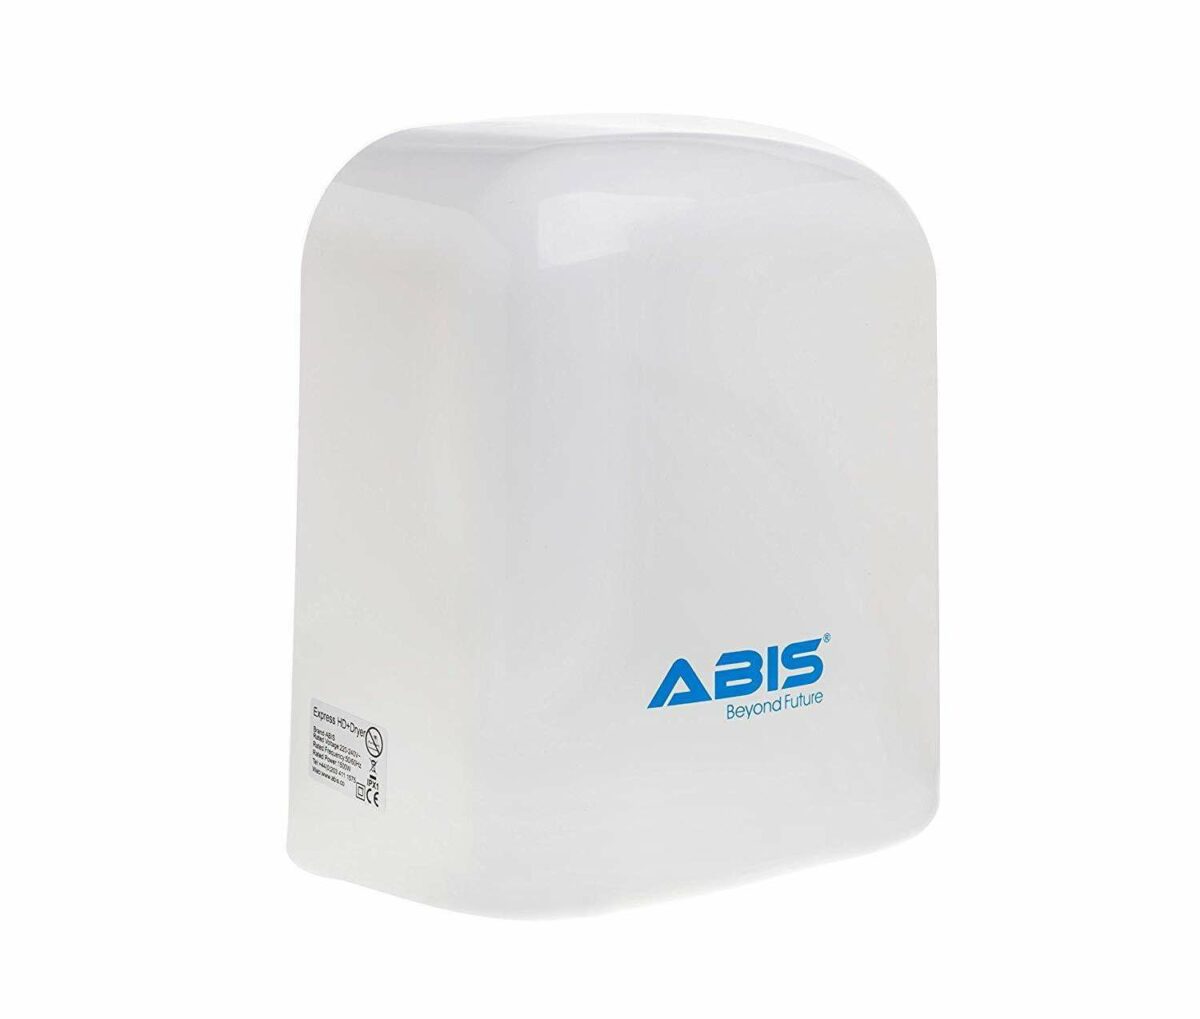 Budget Hand Dryer - Refurbished - ABIS